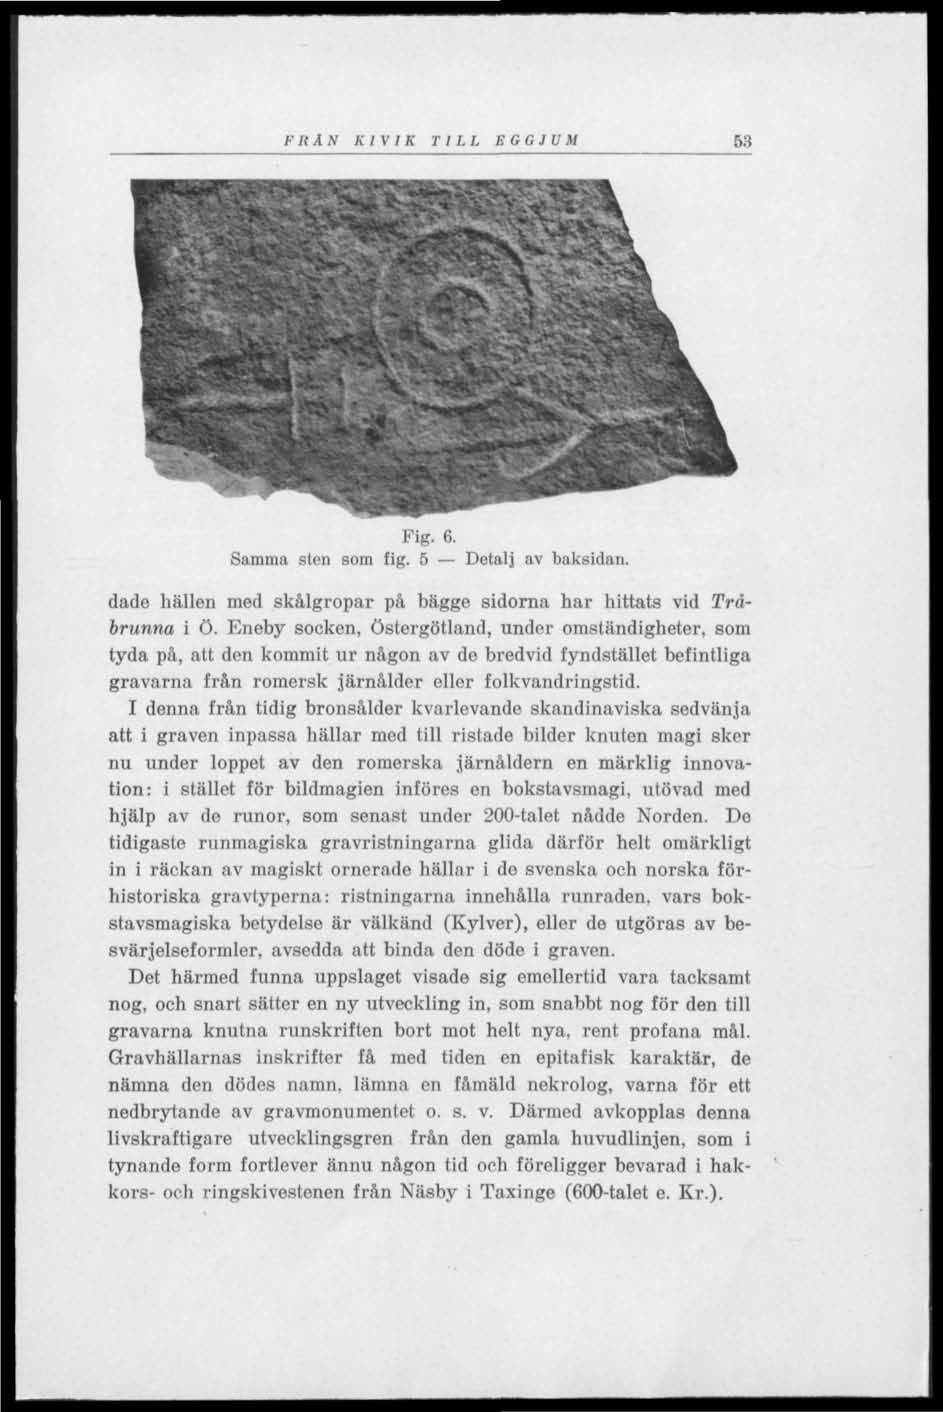 FRÅN KIVIK TILL EGGJUM 53 Fig. 6. Samma sten som fig. 5 Detalj av baksidan. dade hällen med skålgropar på bägge sidorna har hittats vid Tråbrunna i ö.